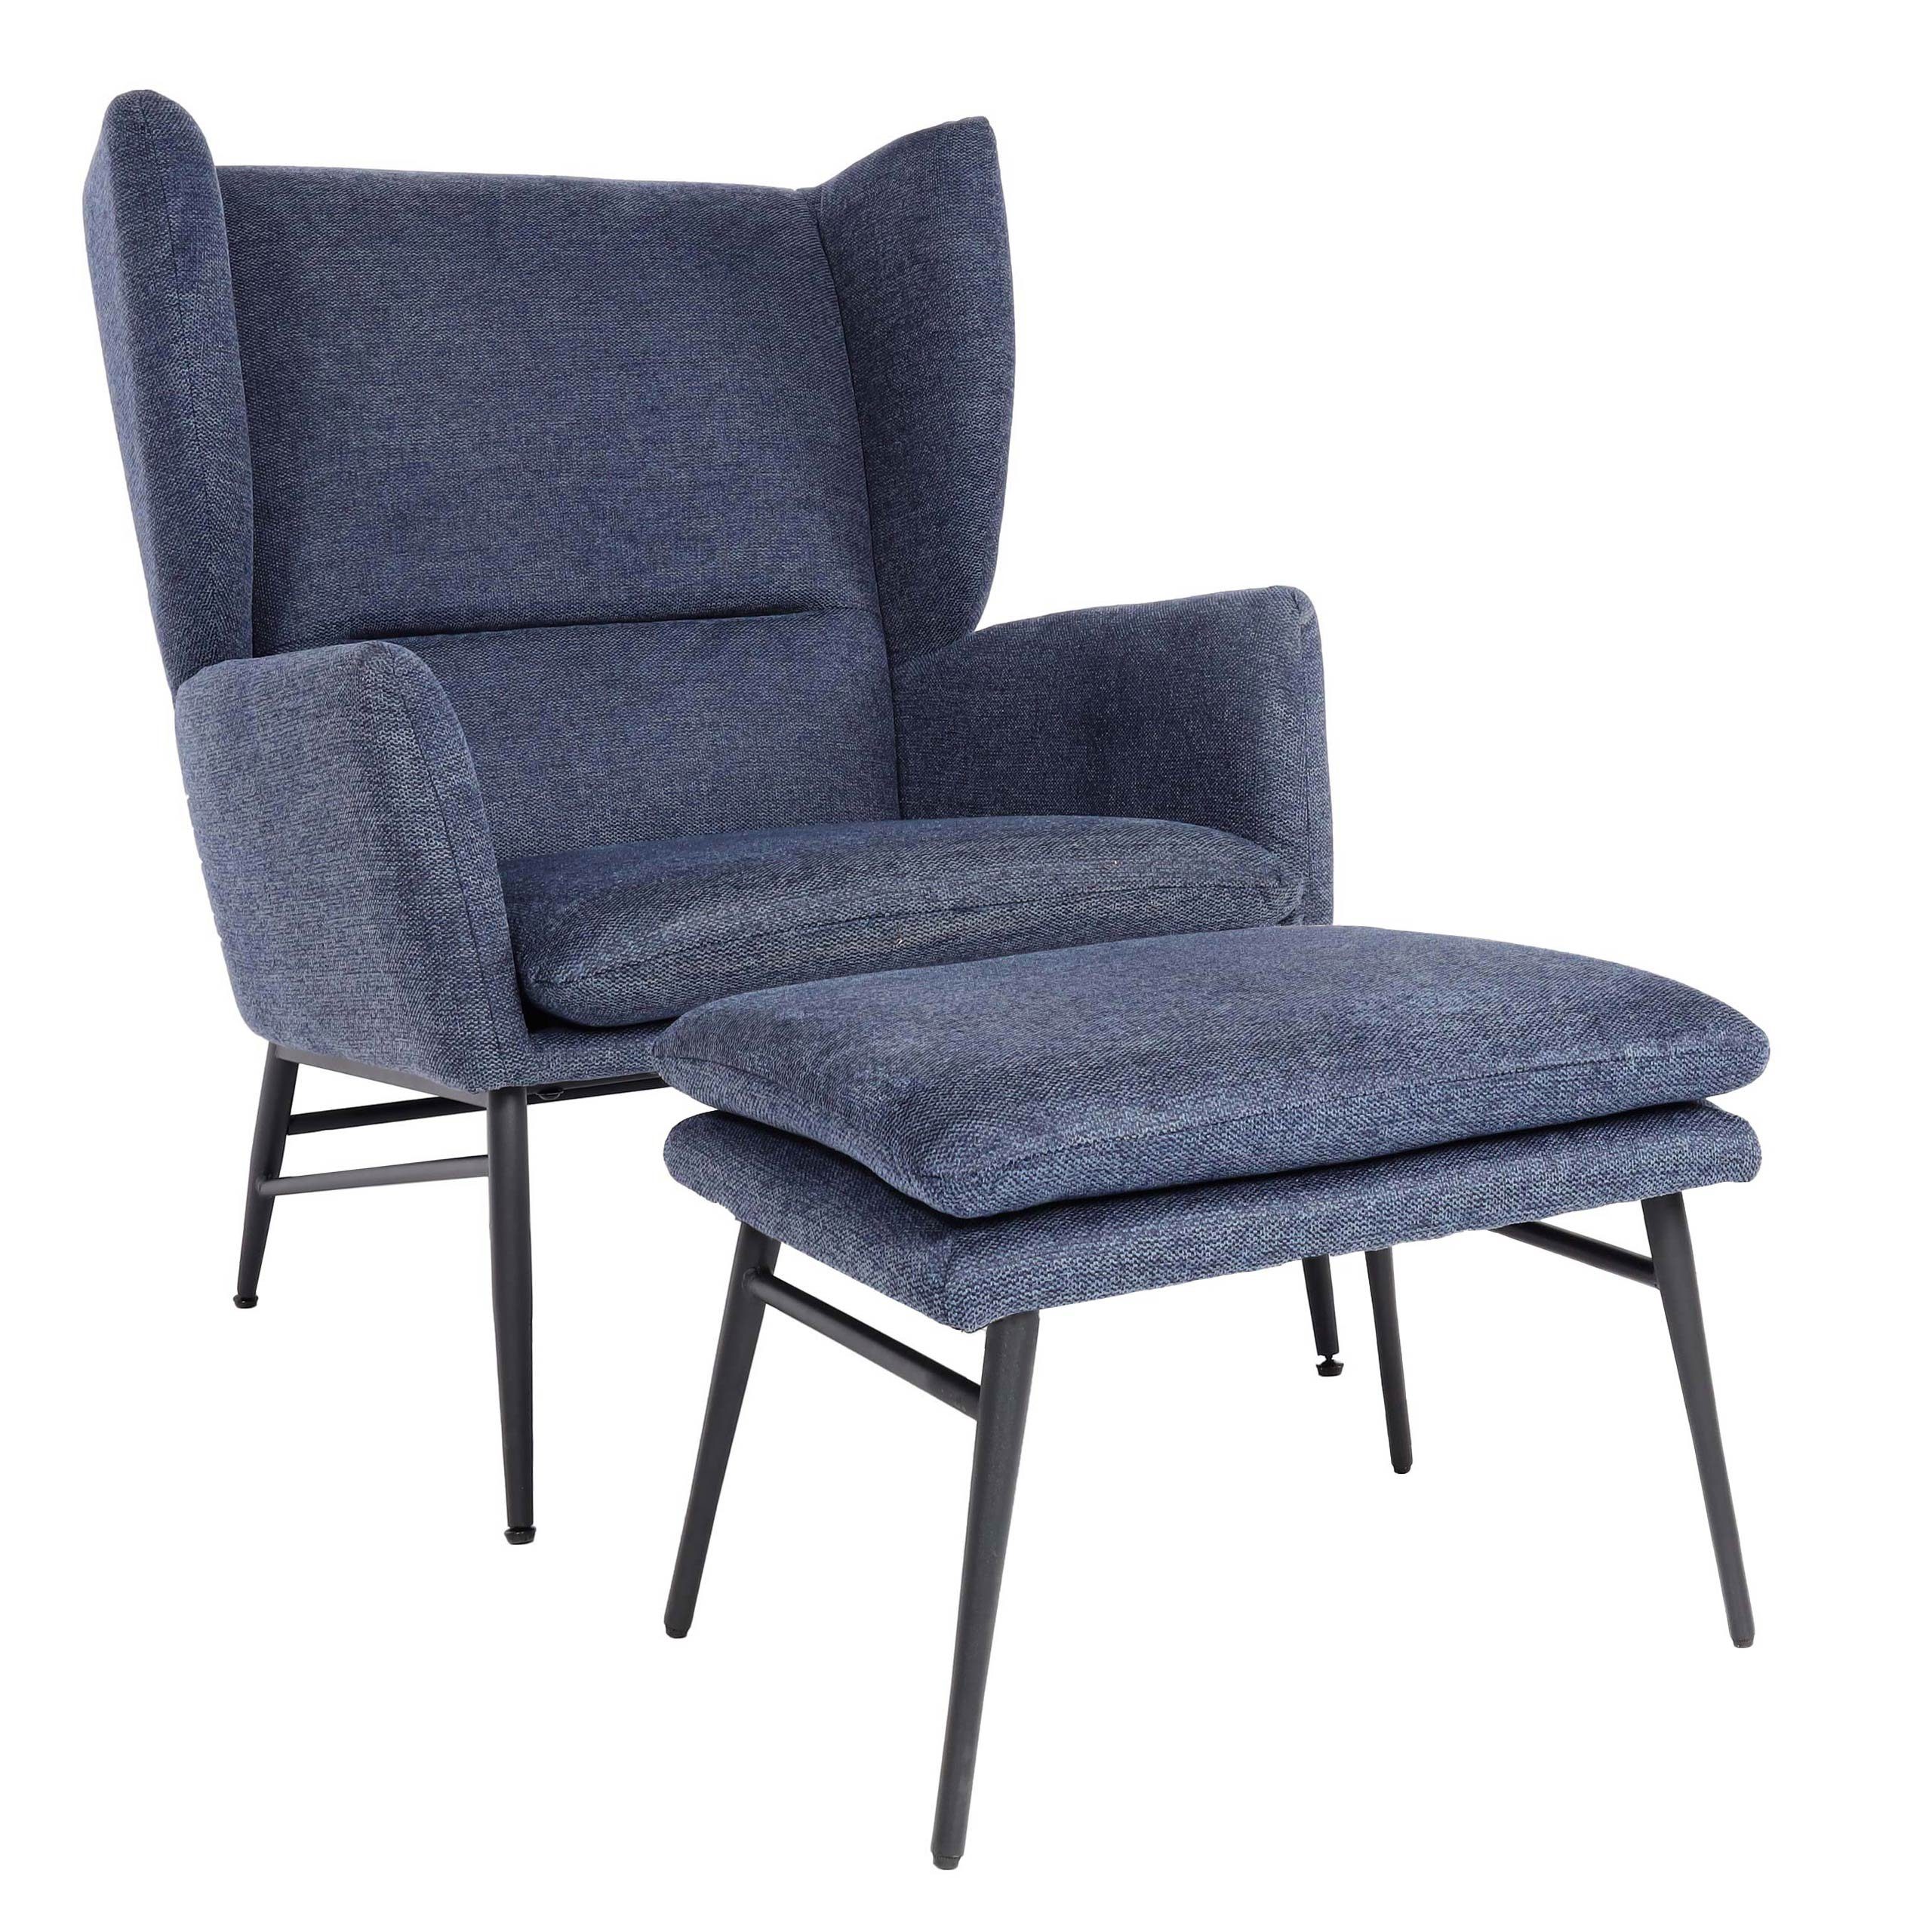 MCW Loungesessel MCW-L62-mO, Extra breite Sitzfläche, Sitzkissen abnehmbar blau